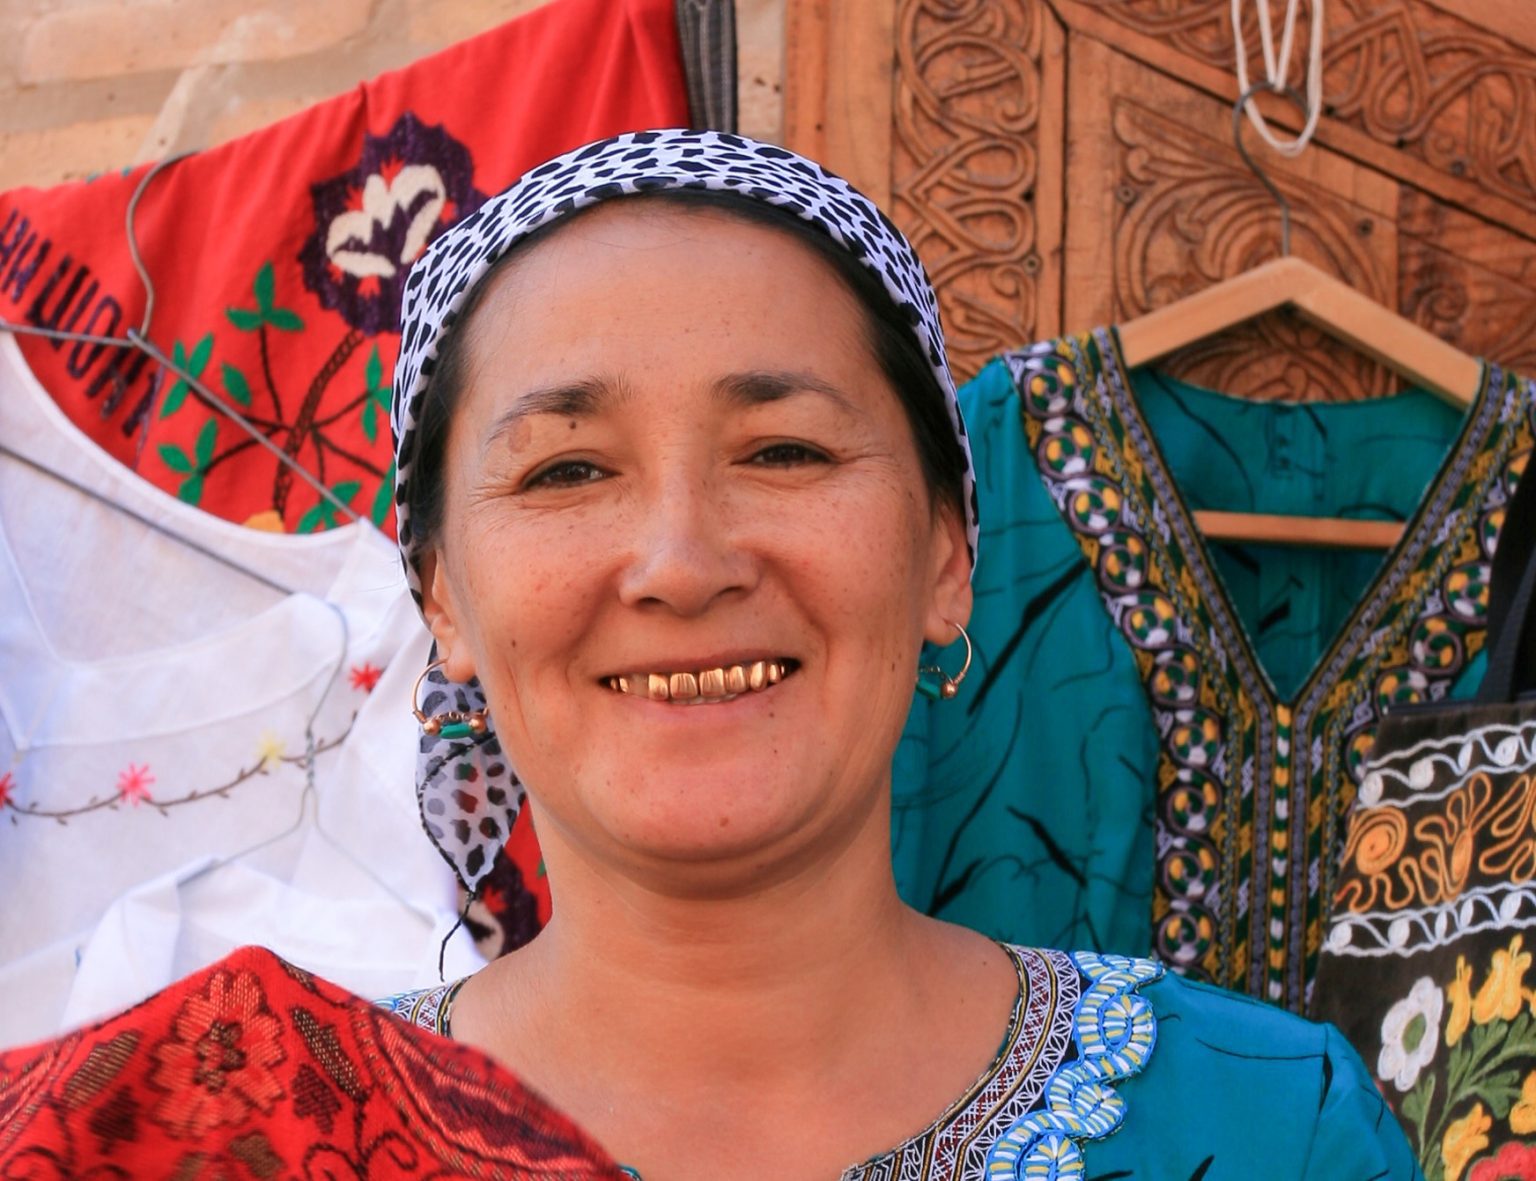 Vendor Uzbekistan